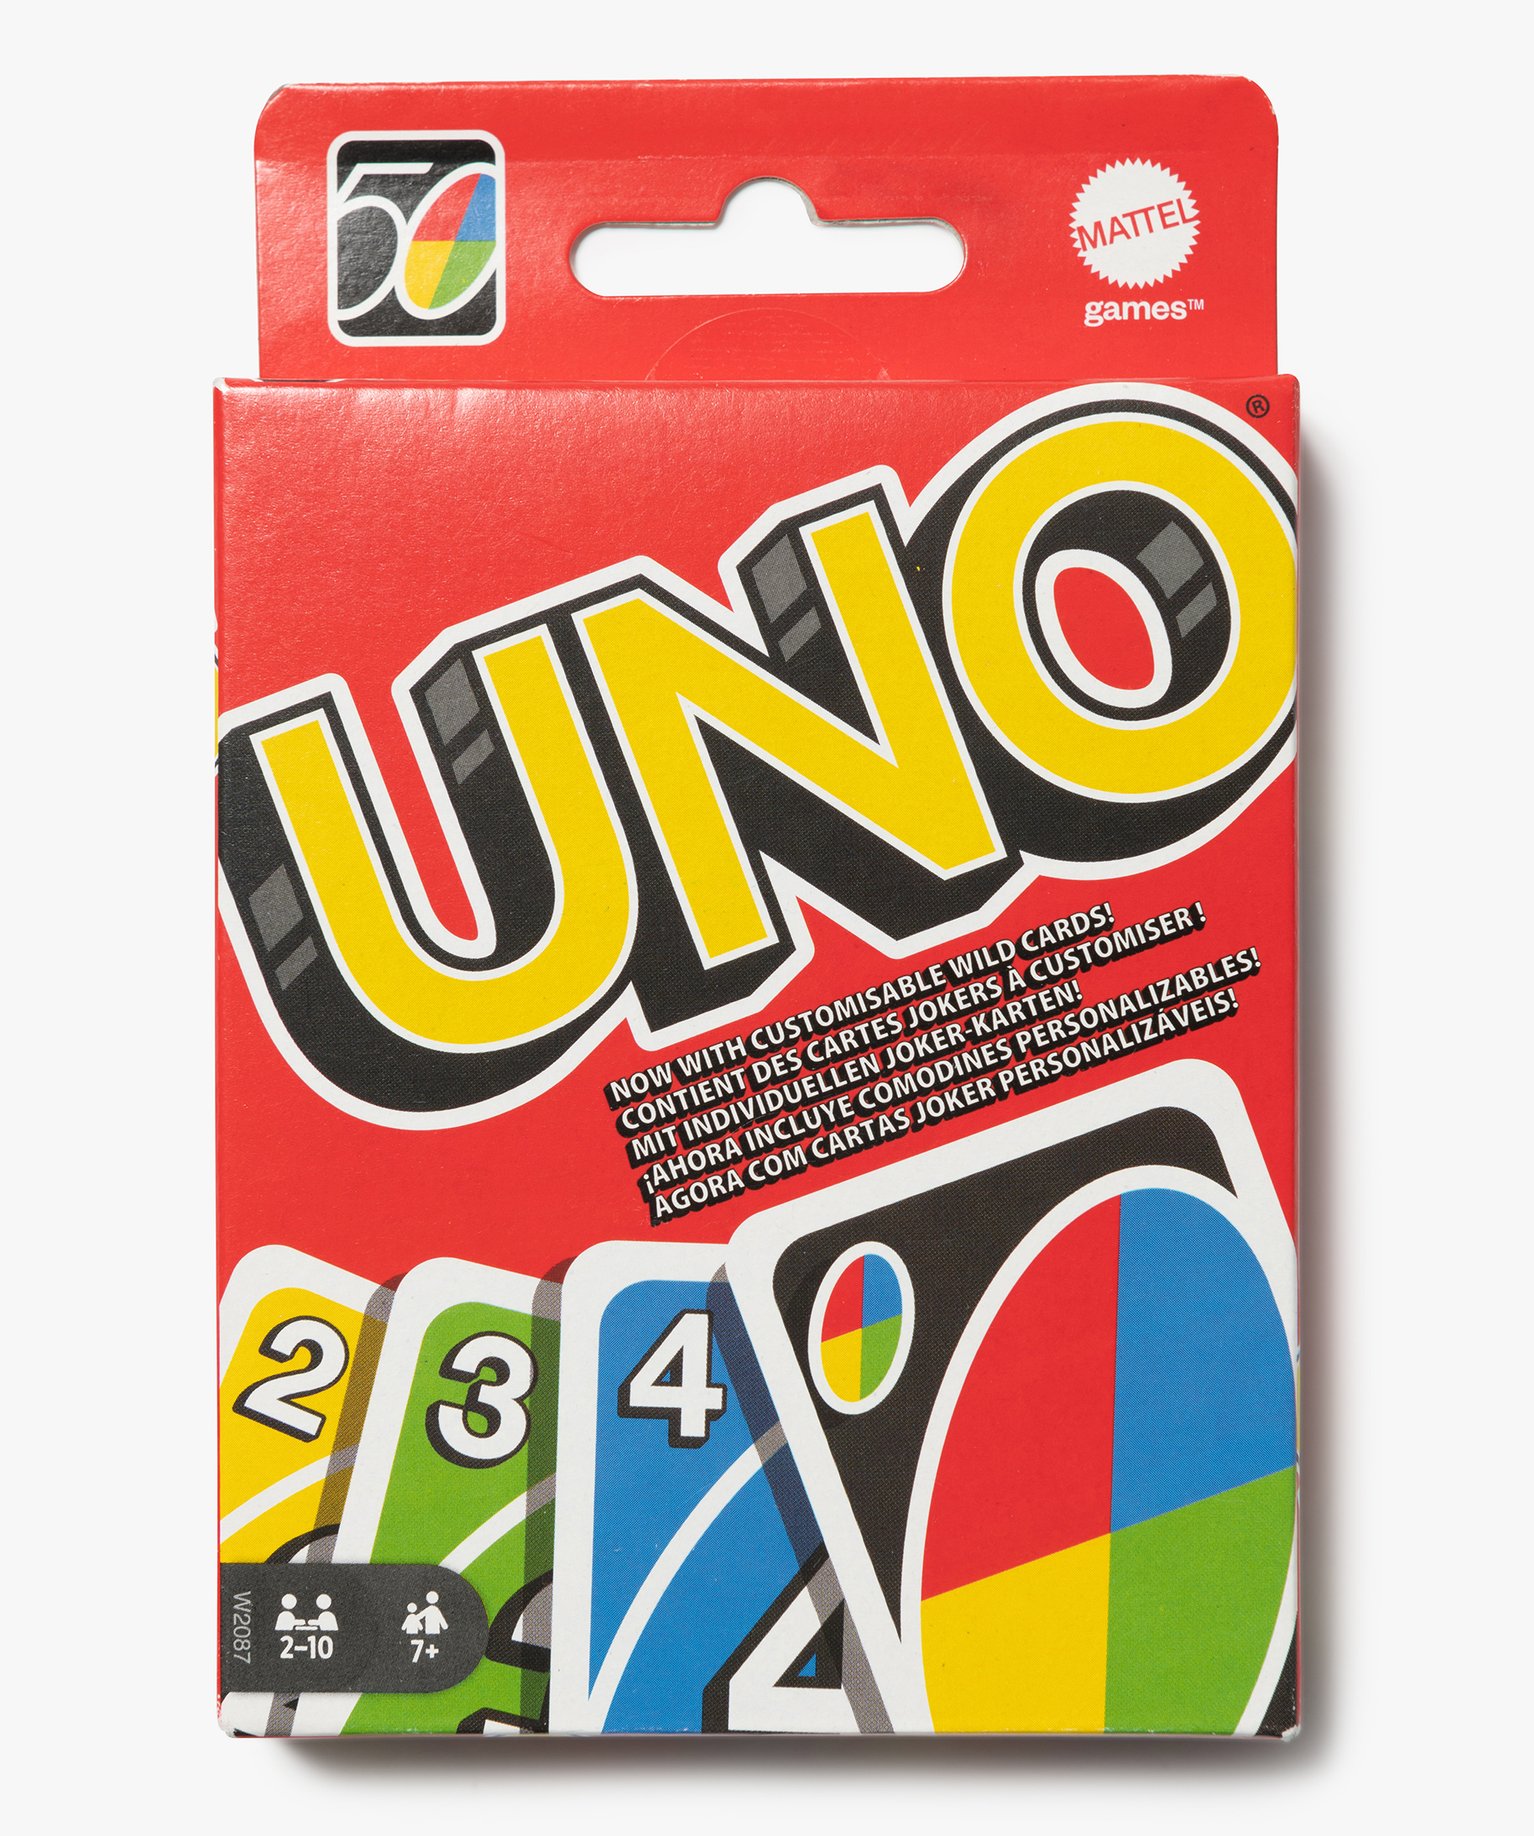 Jeu de cartes Uno - Mattel